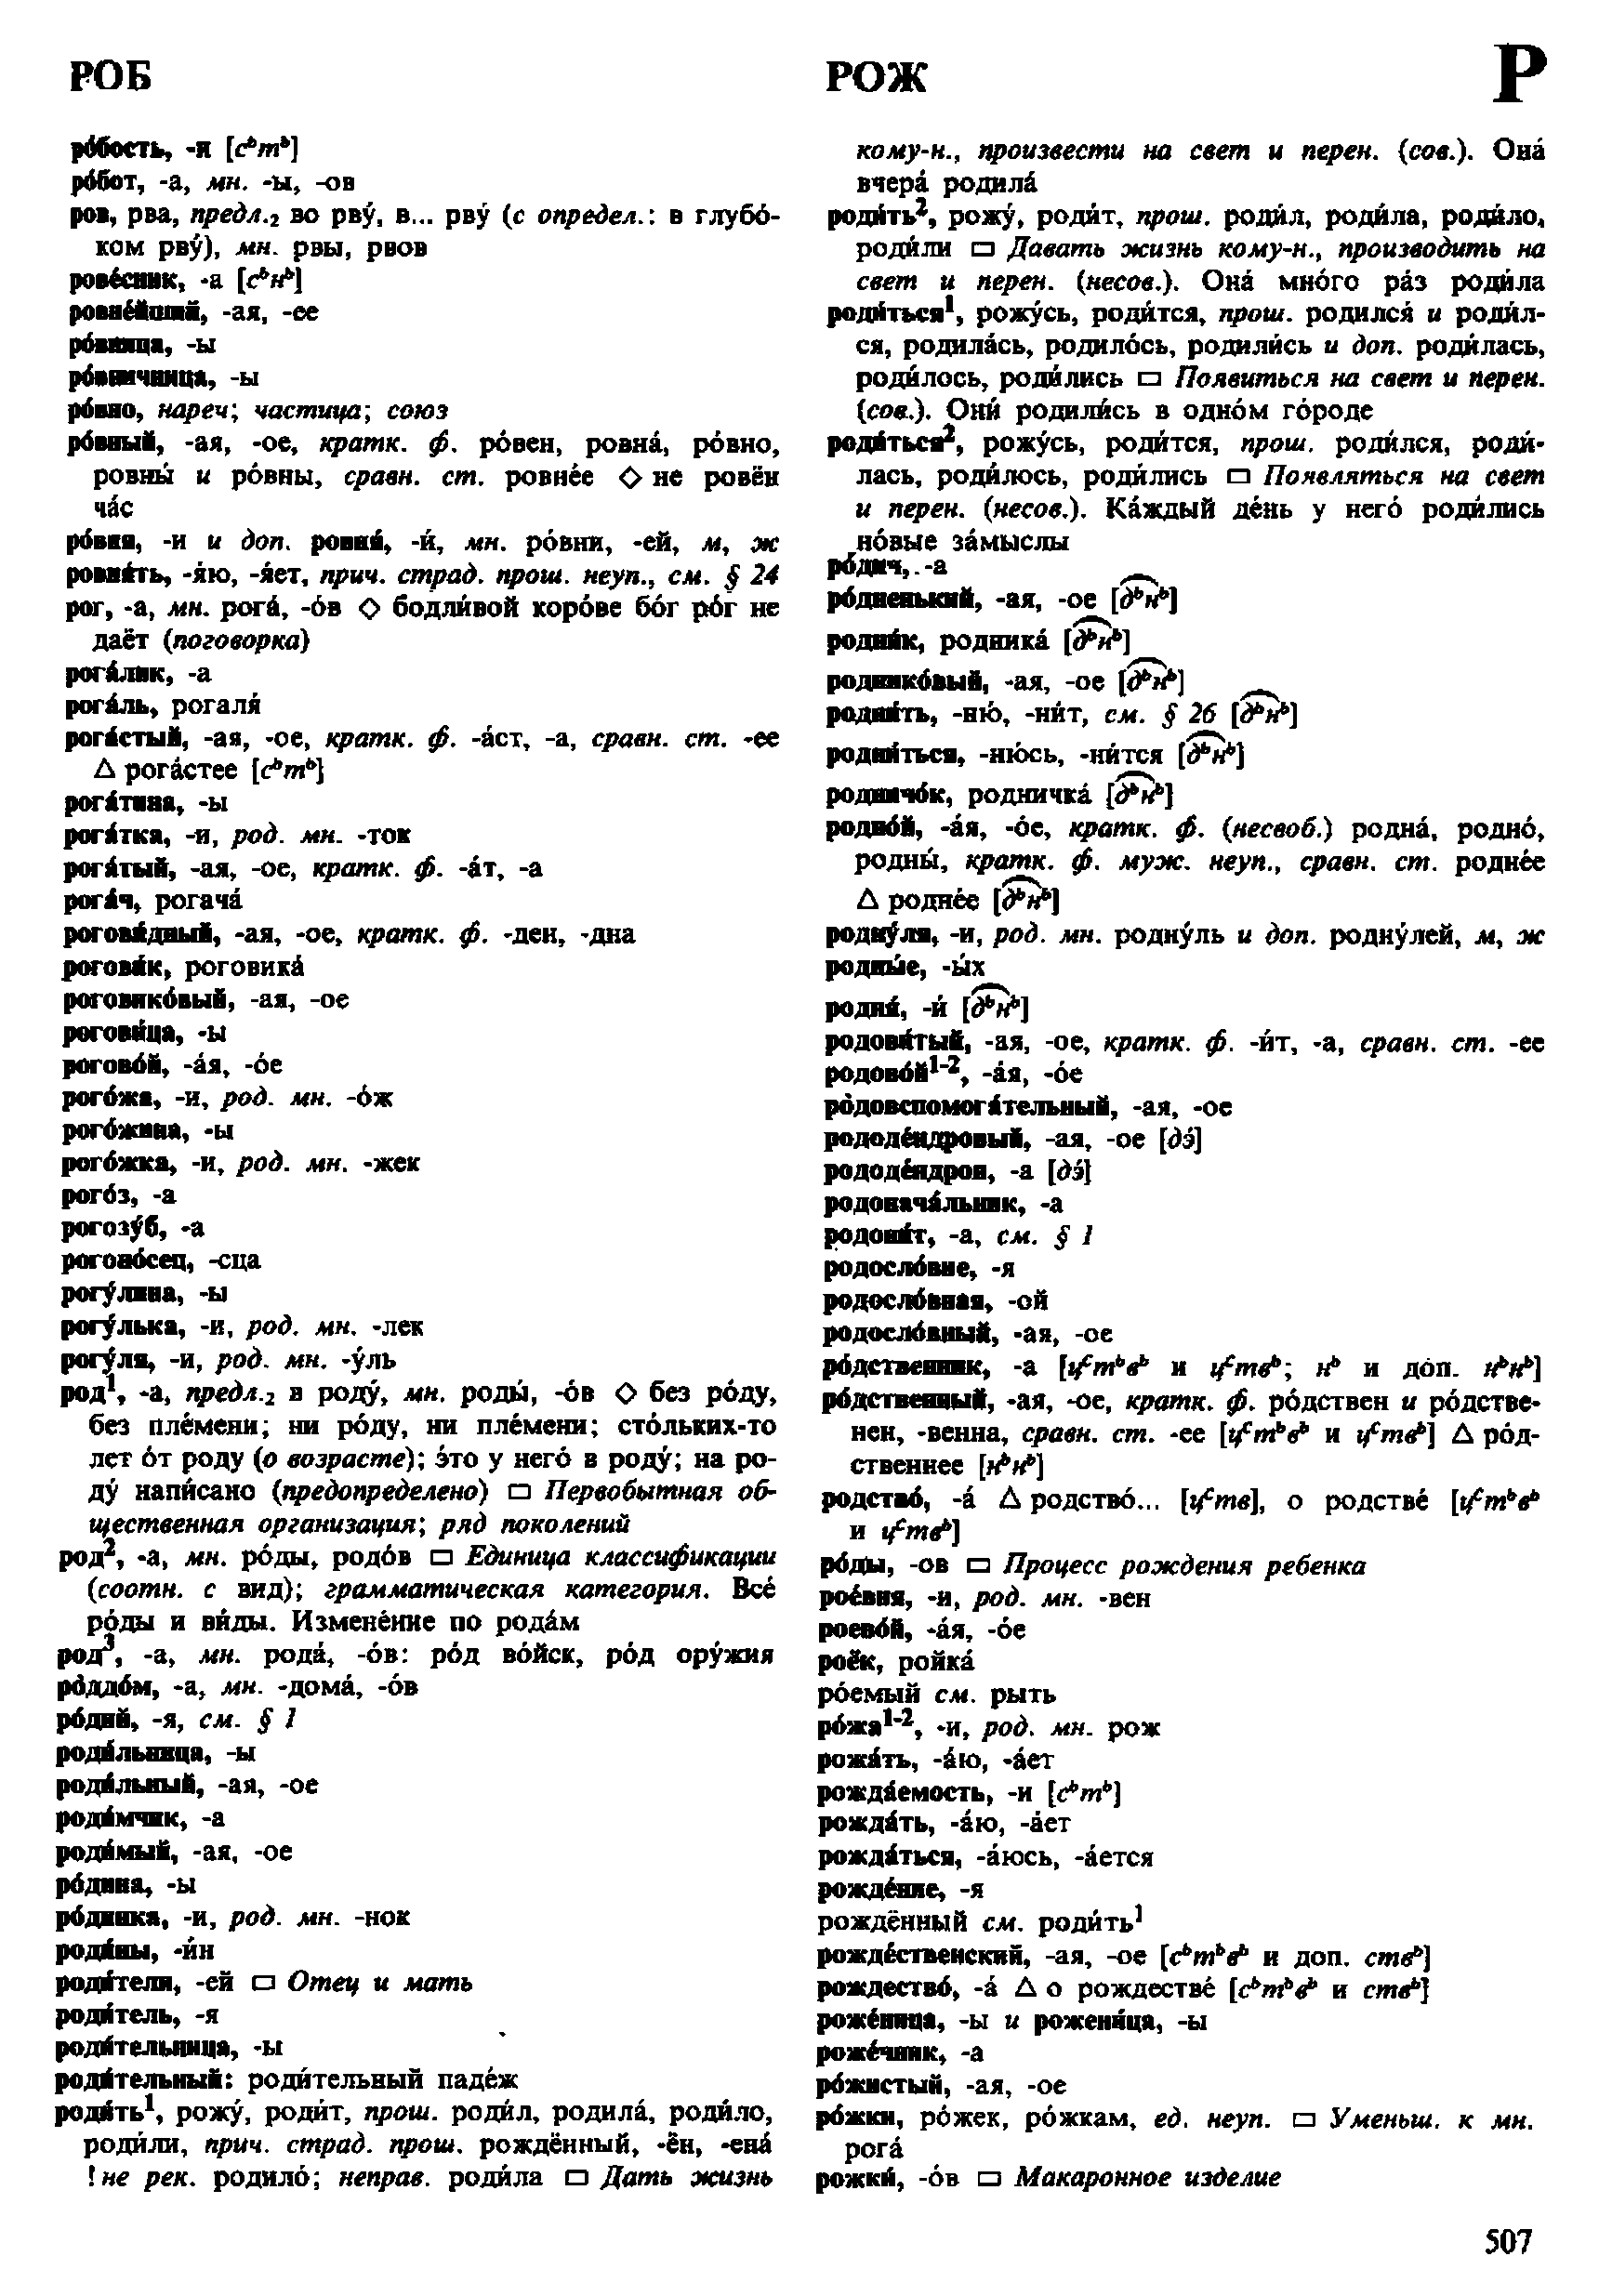 Фотокопия pdf / скан страницы 507 орфоэпического словаря под редакцией Аванесова (4 издание, 1988 год)